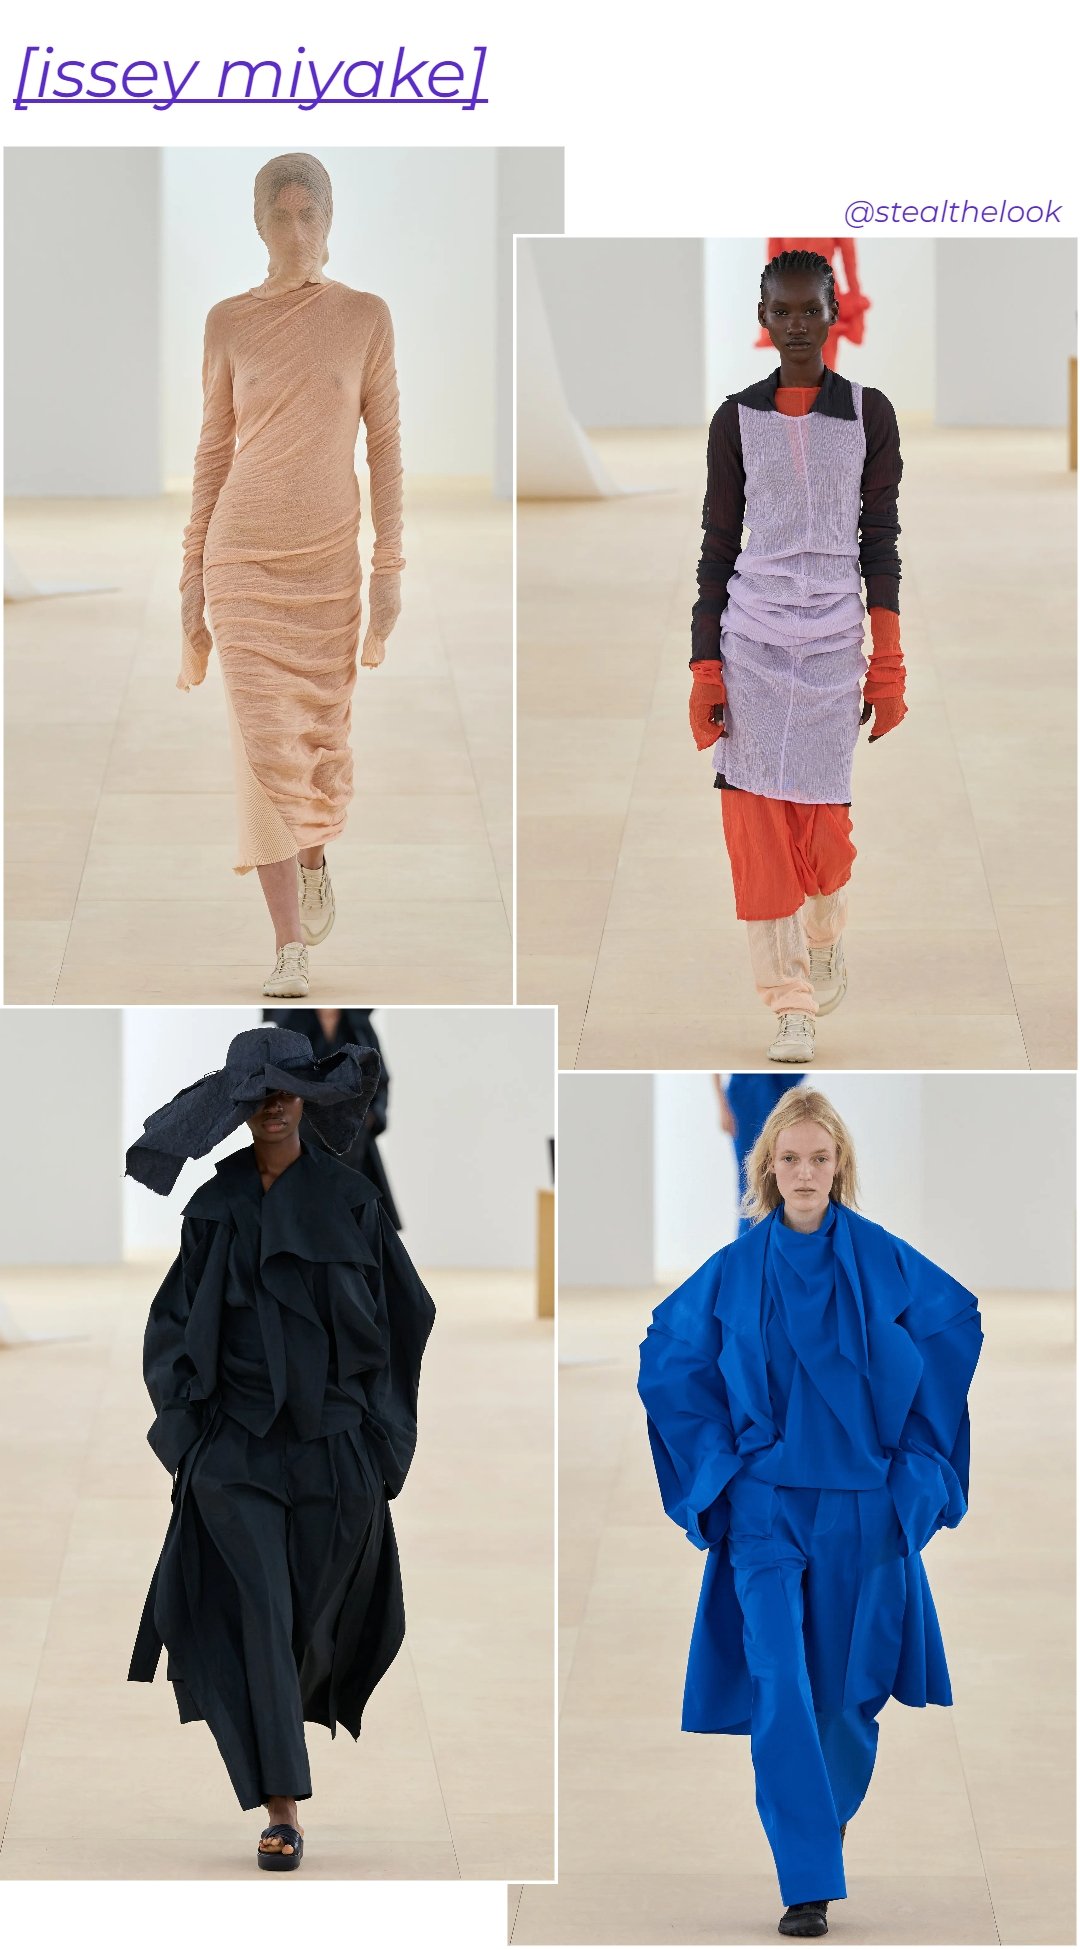 Issey Miyake - roupas diversas - Paris Fashion Week - verão - colagem de imagens - https://stealthelook.com.br